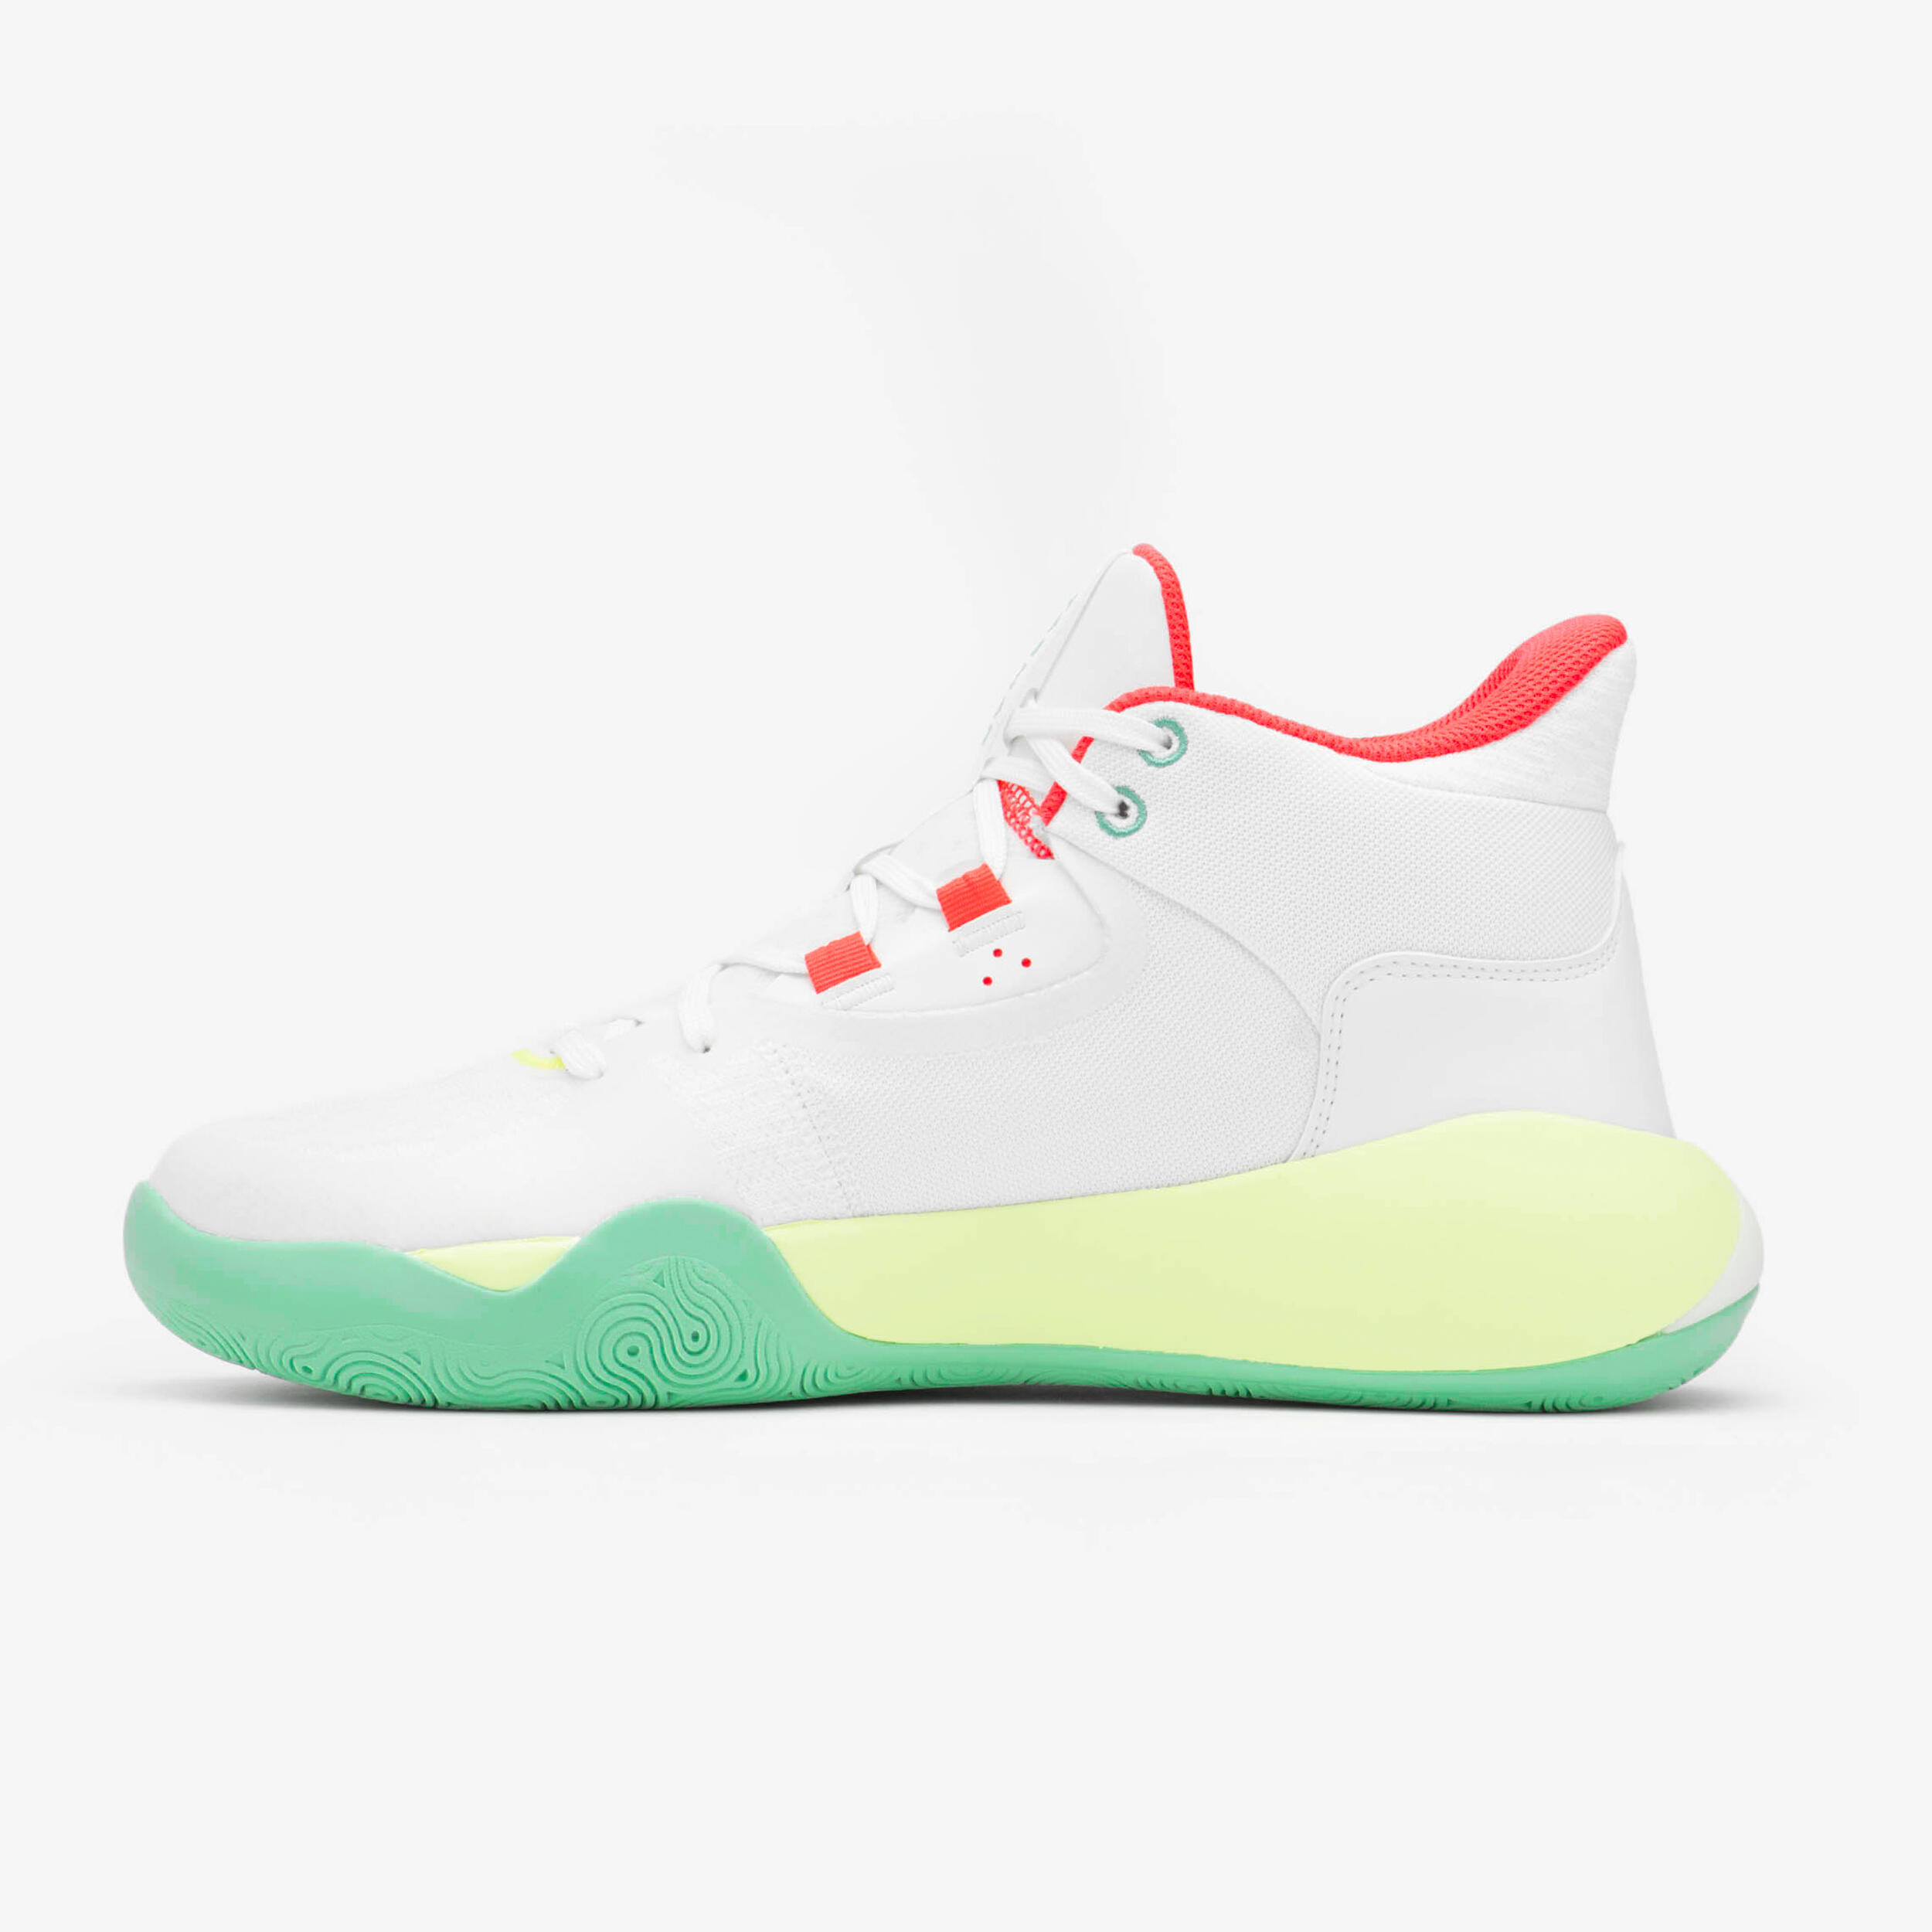 Men's/Women's Basketball Shoes SE 500 High - White 3/8